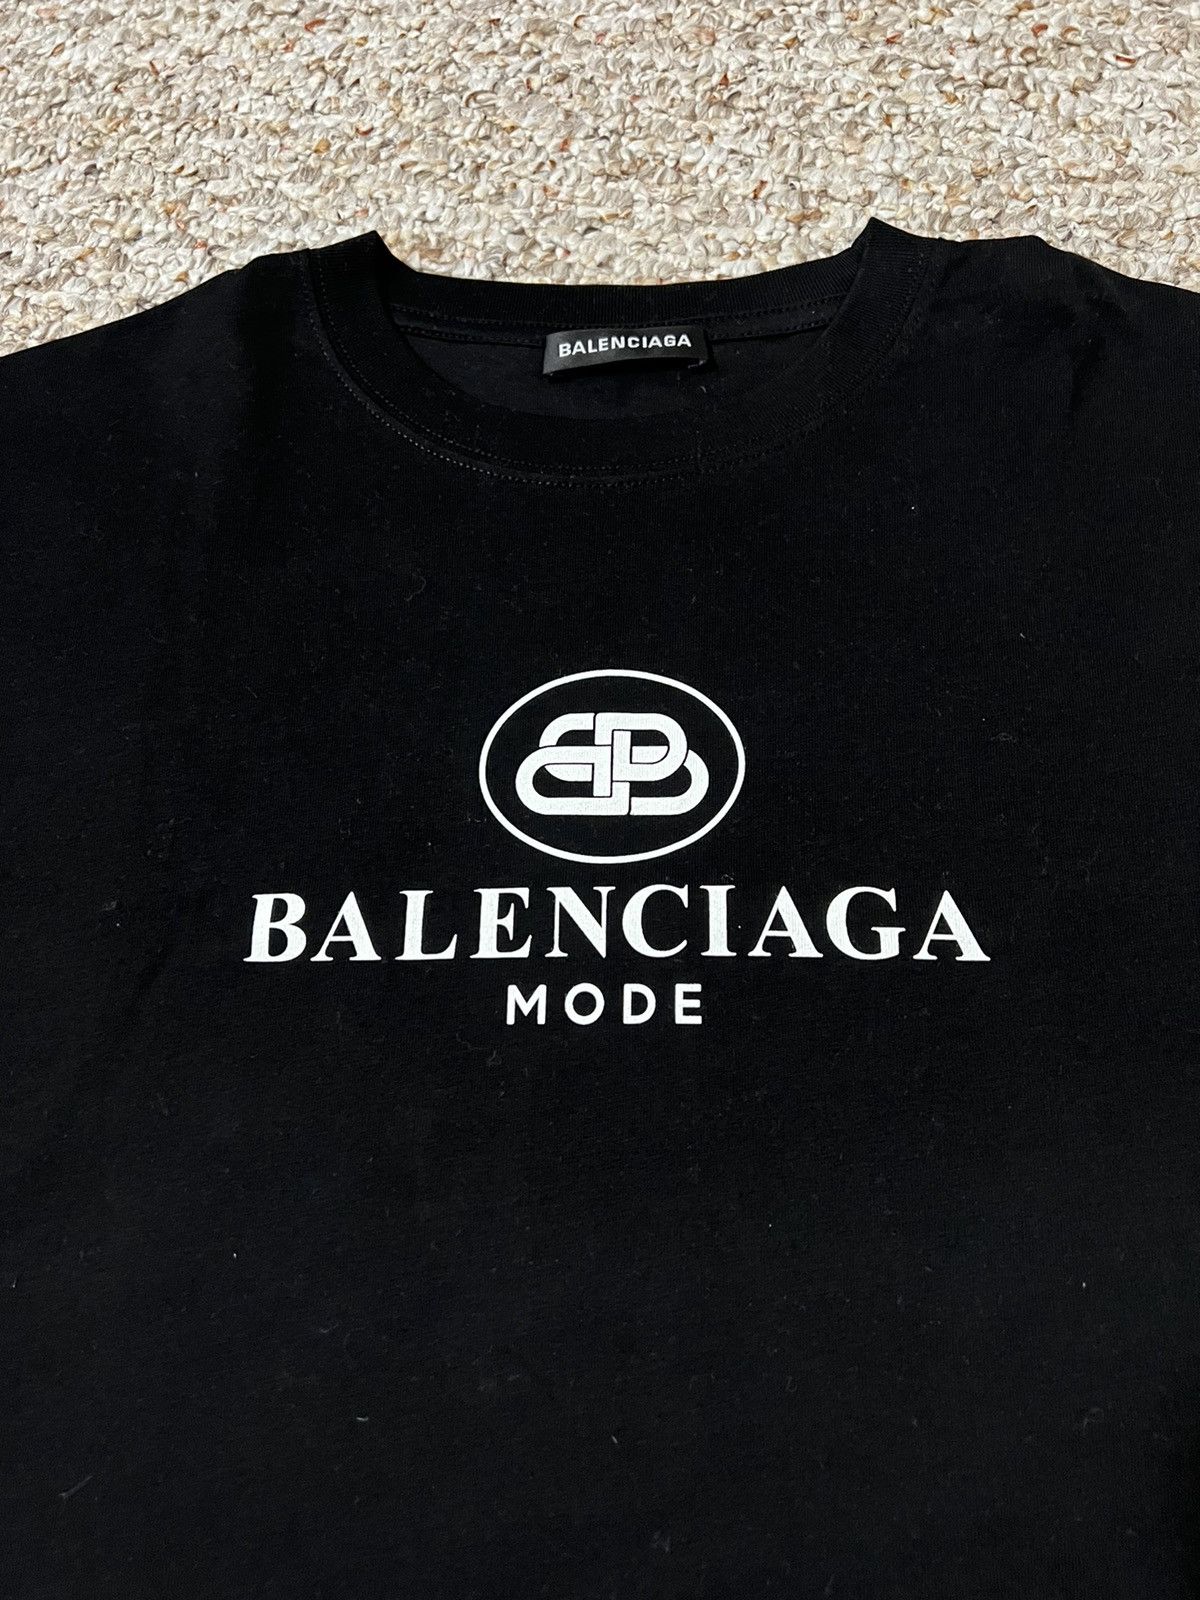 Balenciaga Balenciaga BB Mode T-Shirt XL | Grailed